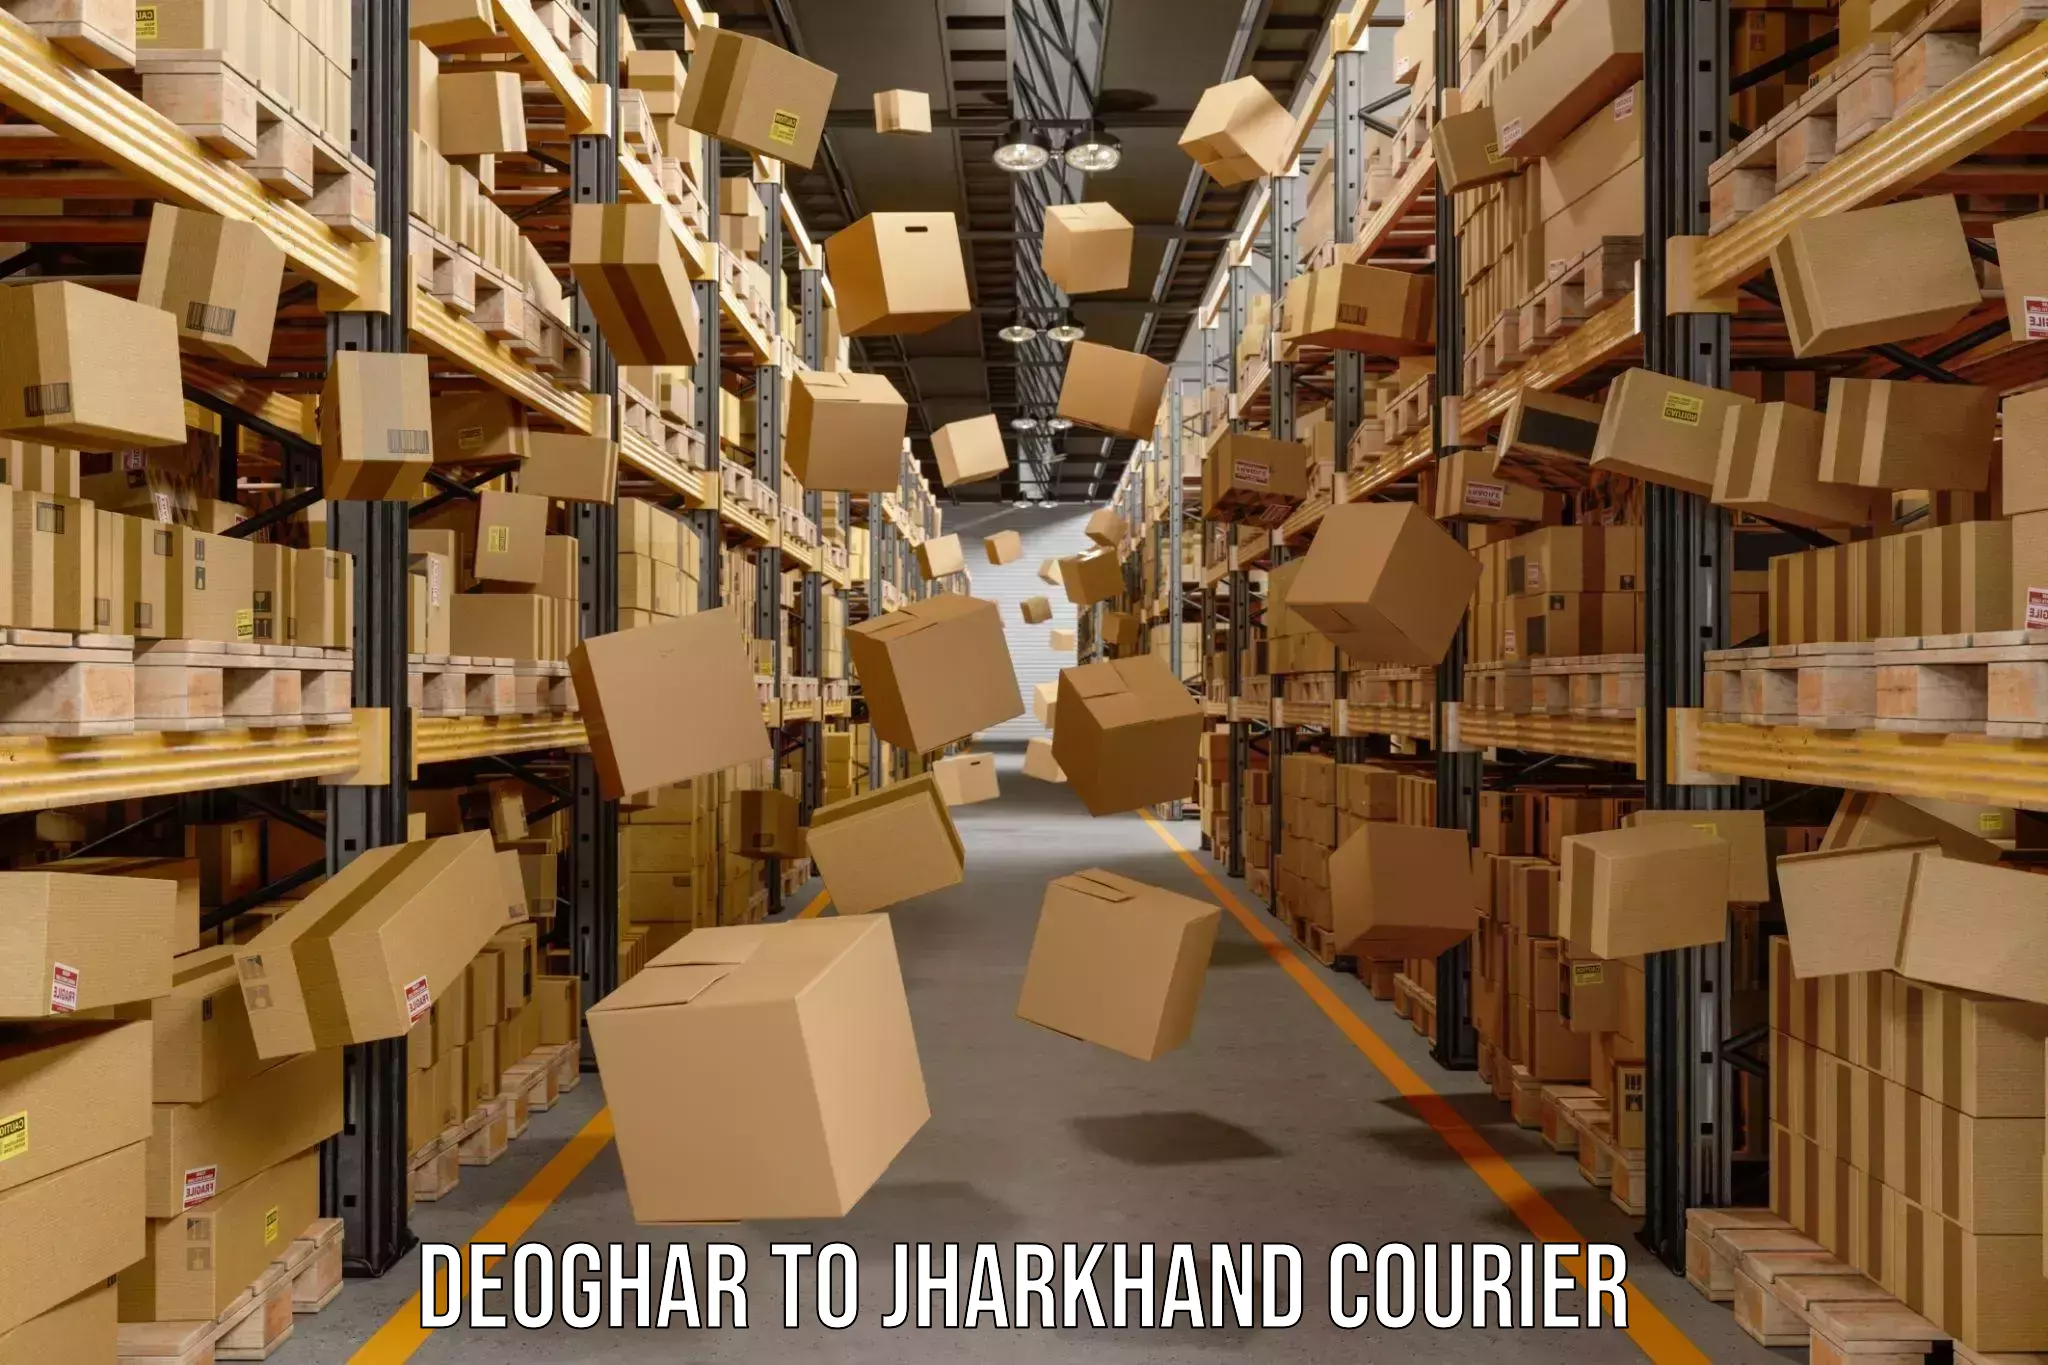 Global parcel delivery Deoghar to Godda